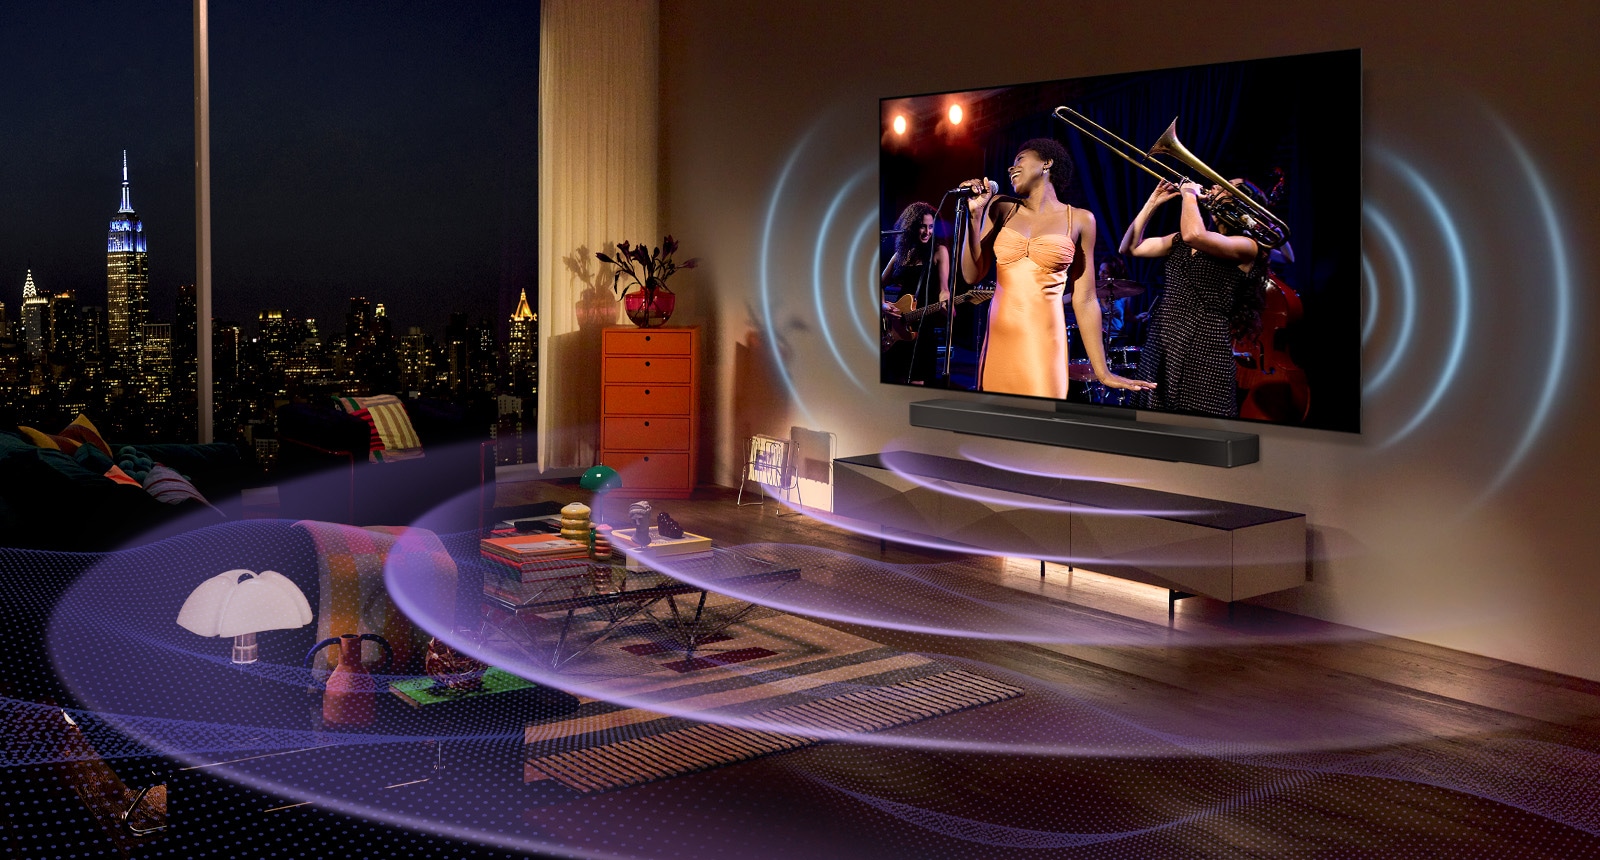 Hình ảnh một chiếc TV LG OLED trong một căn phòng chiếu một buổi hòa nhạc. Các đường cong màu xanh lam mô tả âm thanh TV và các đường cong màu tím thể hiện âm thanh Soundbar lấp đầy không gian.